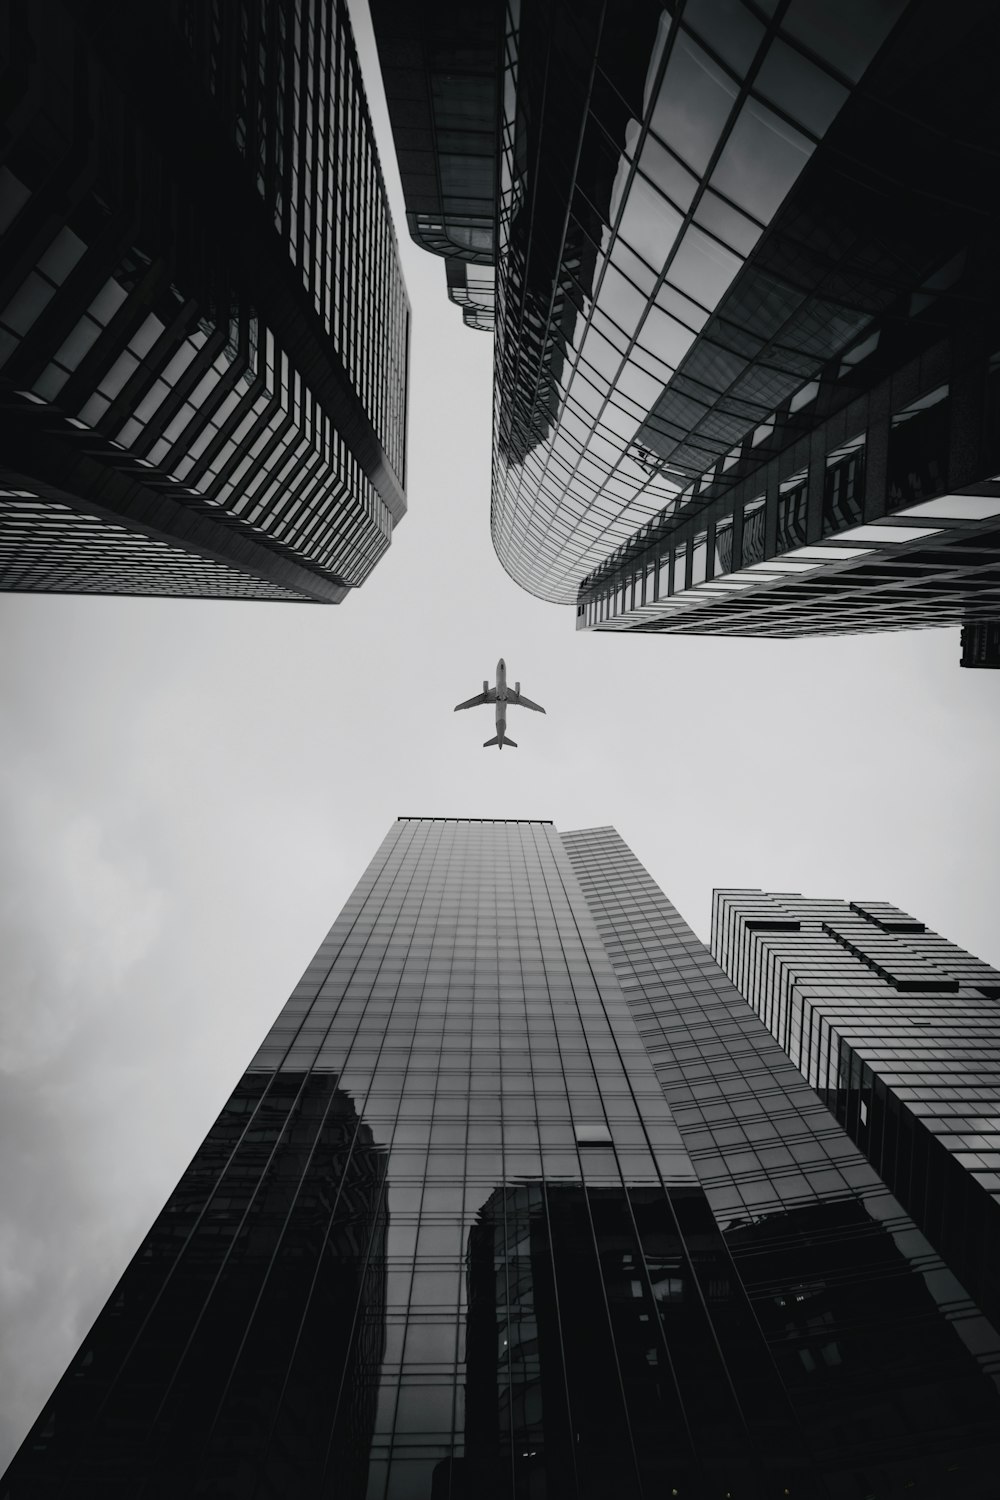 avion survolant les immeubles de grande hauteur pendant la journée